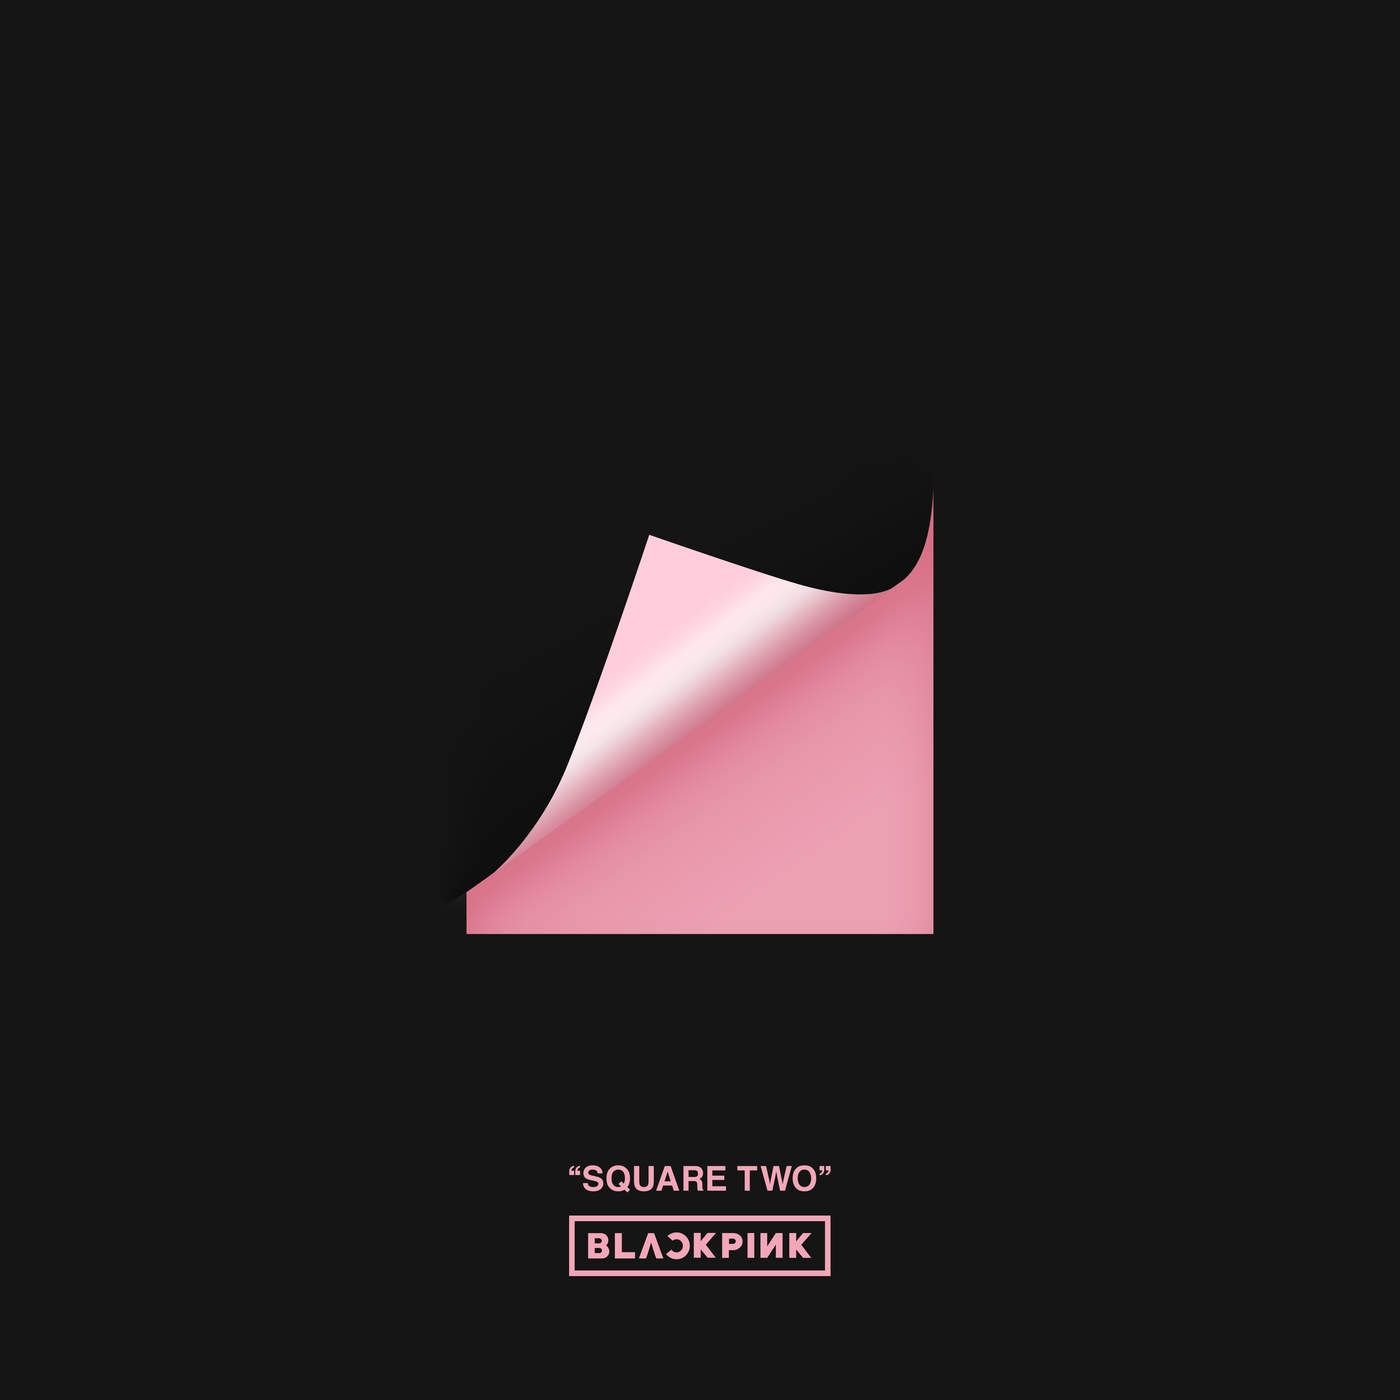 Imagem do álbum Square Two do(a) artista BLACKPINK